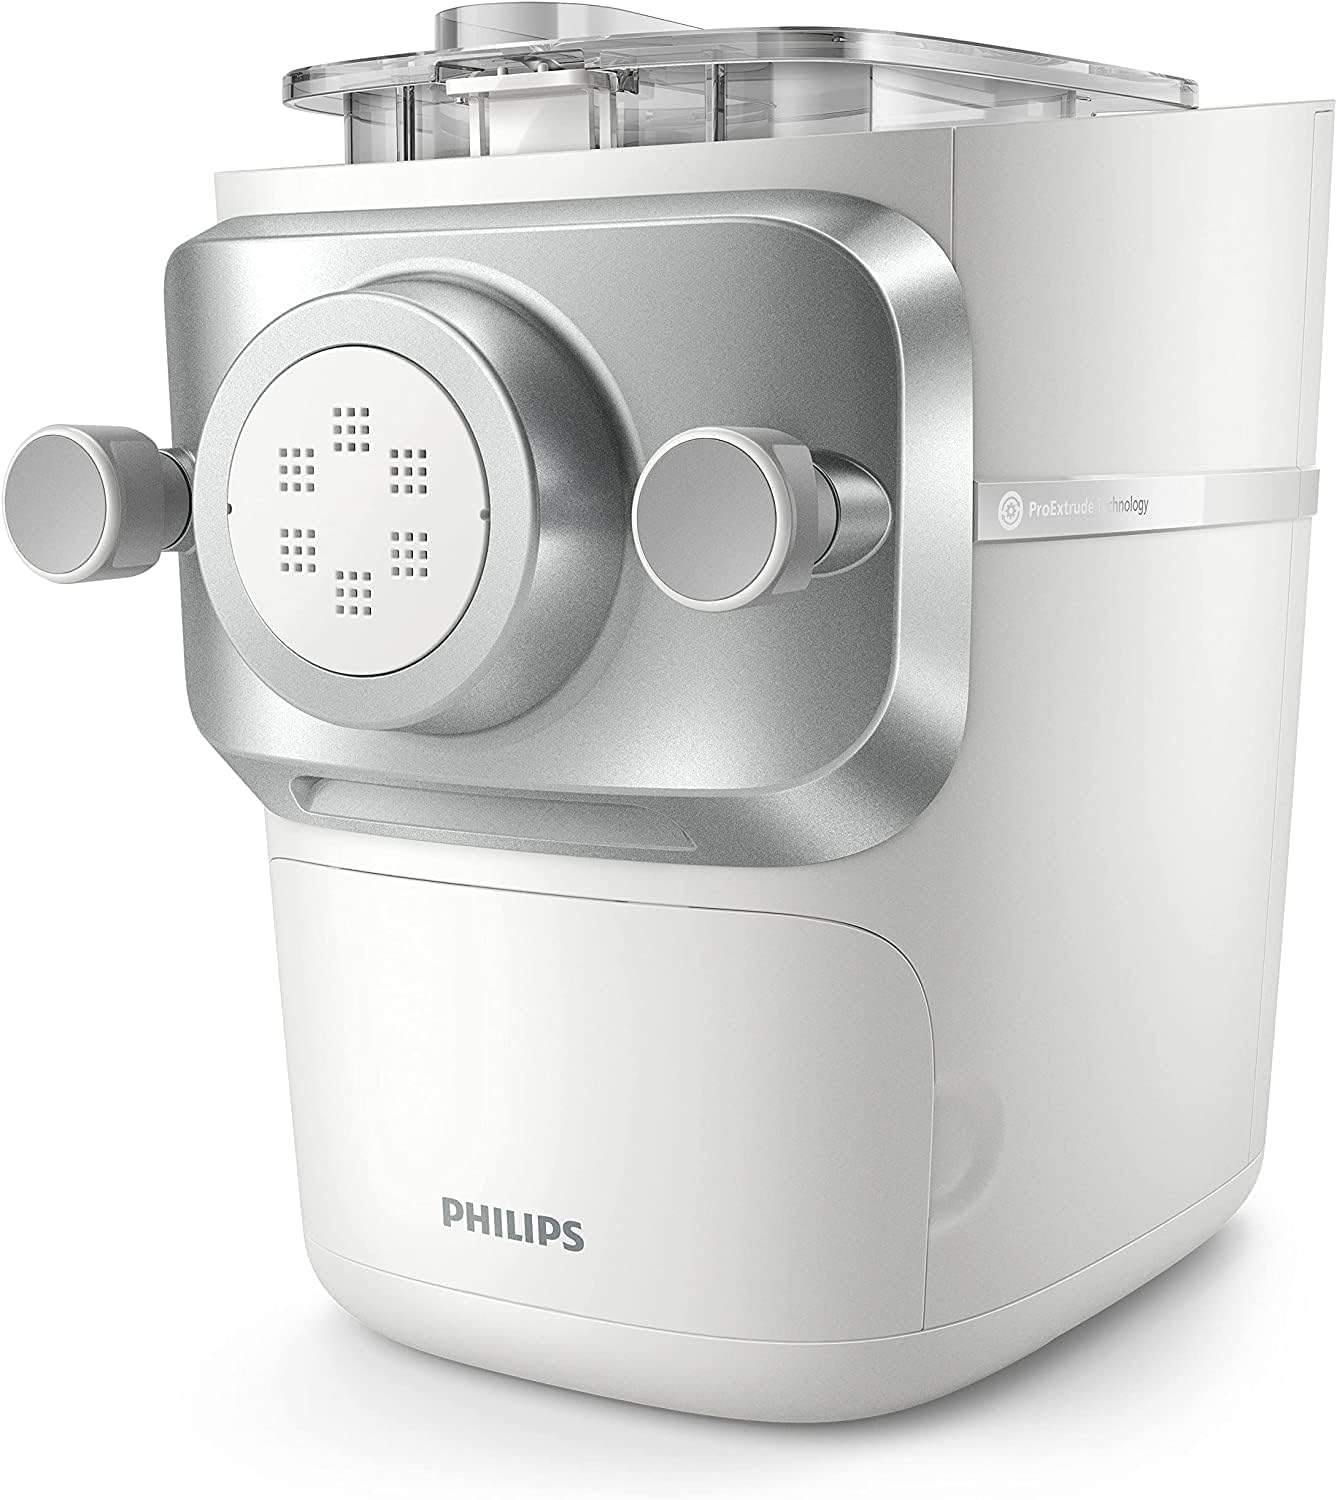 Philips-Nudelmaschine-Serie-7000-HR2660-00